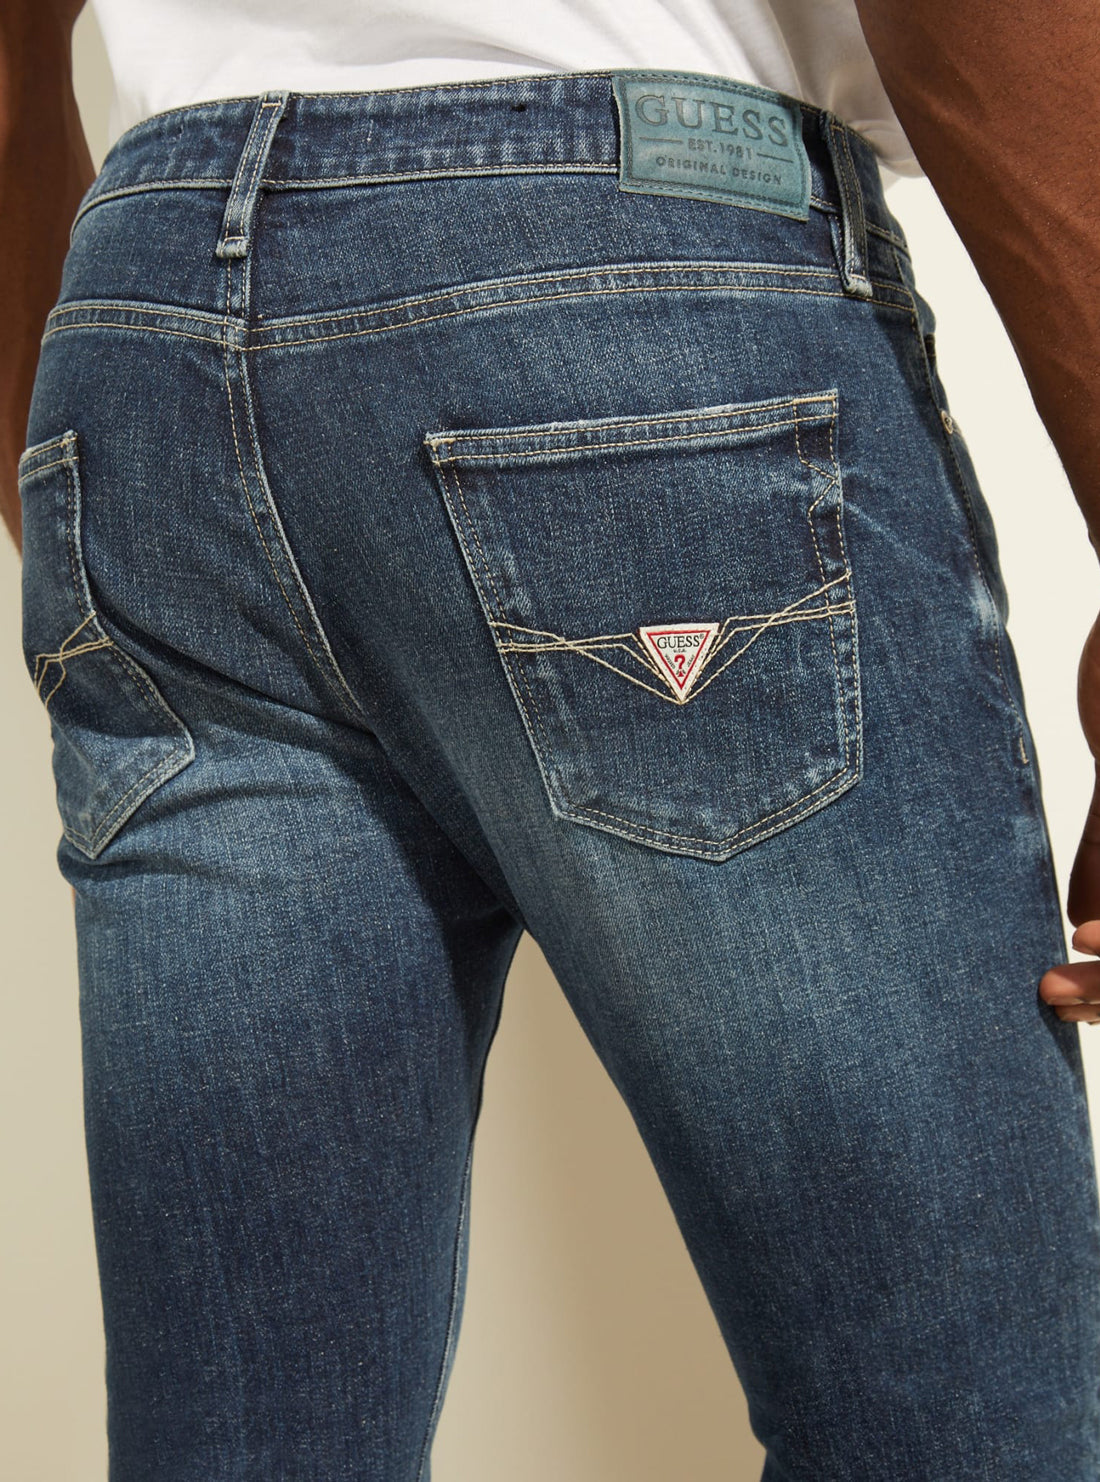 GUESS Mens Eco Mid-Rise Skinny Chris Denim Jeans In Samurai Wash M2RA27D4EX5 Detail View